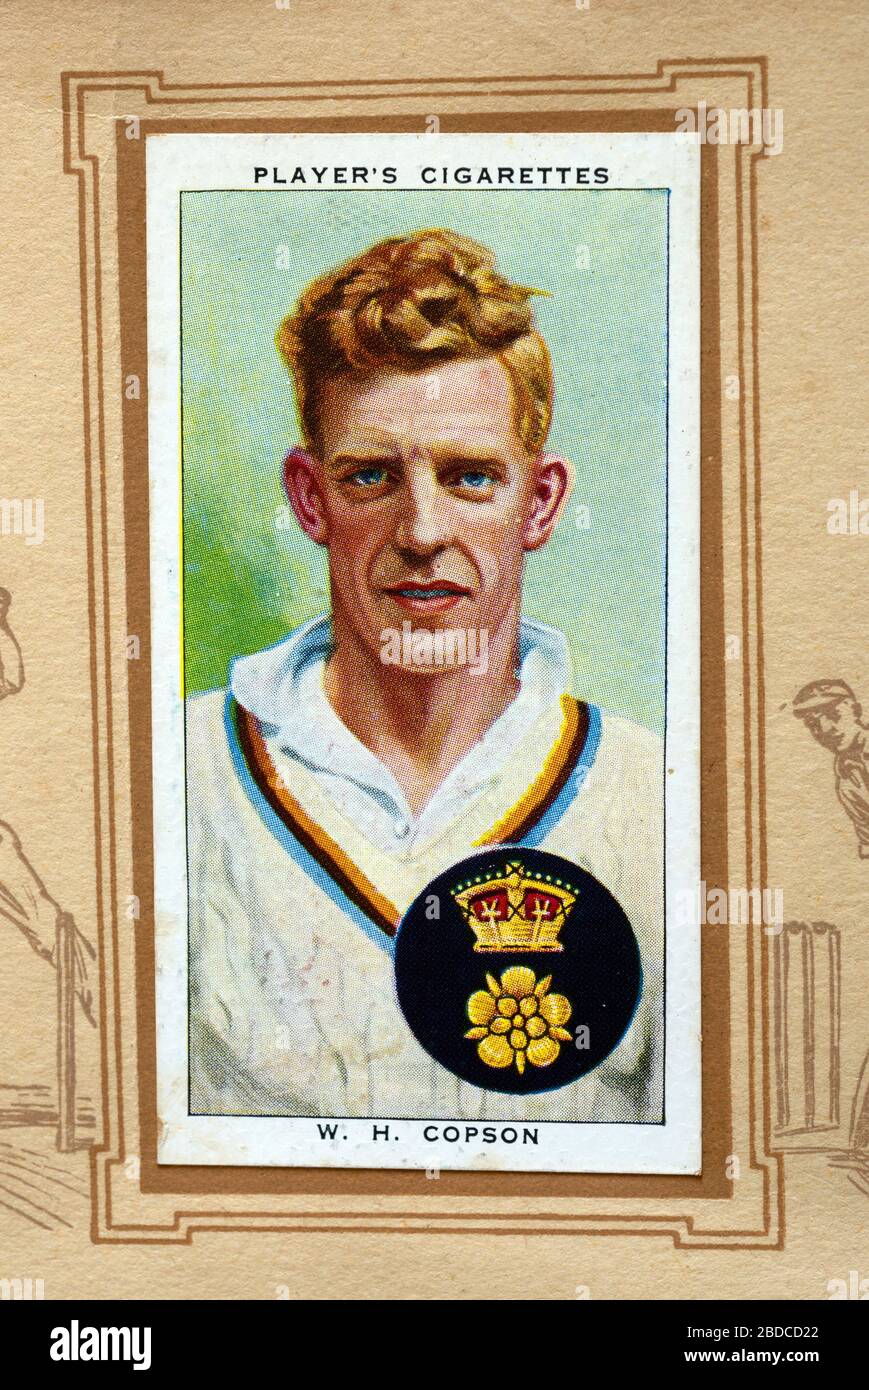 Voiture de cigarette d'un joueur, Cricketers 1938, William Copson Banque D'Images